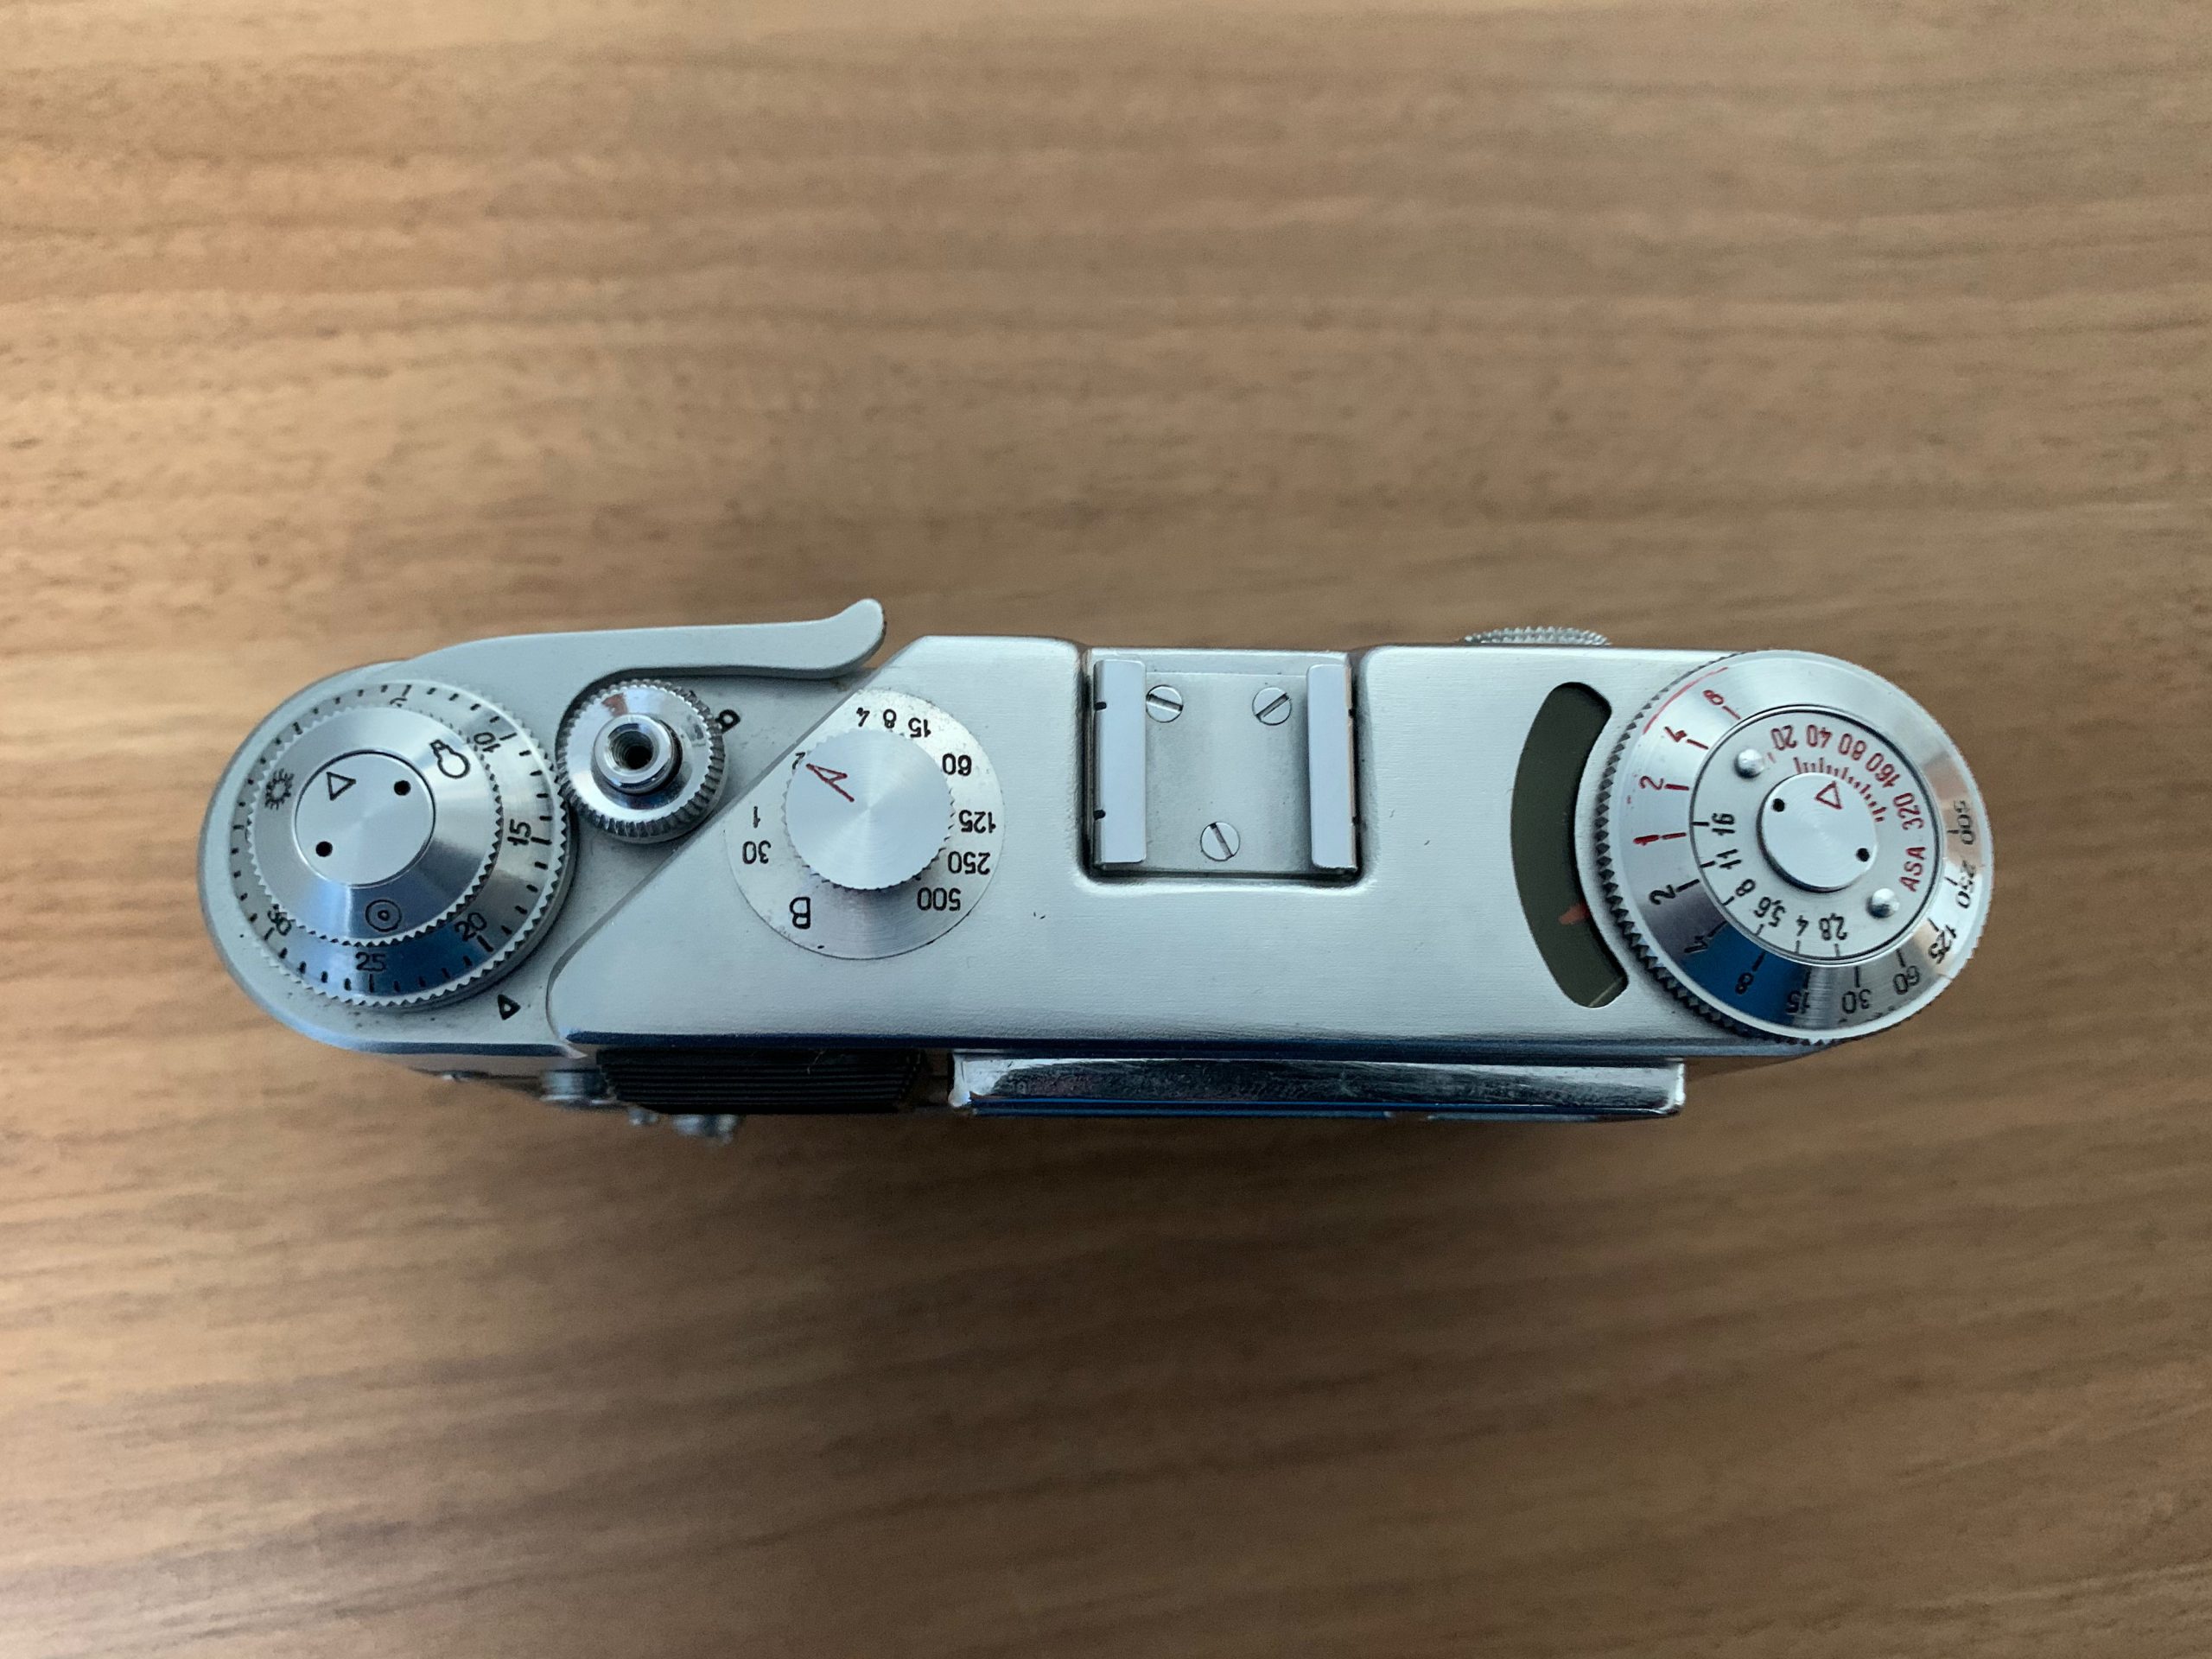 FED 4 Rangefinder Camera - Spares or Repair